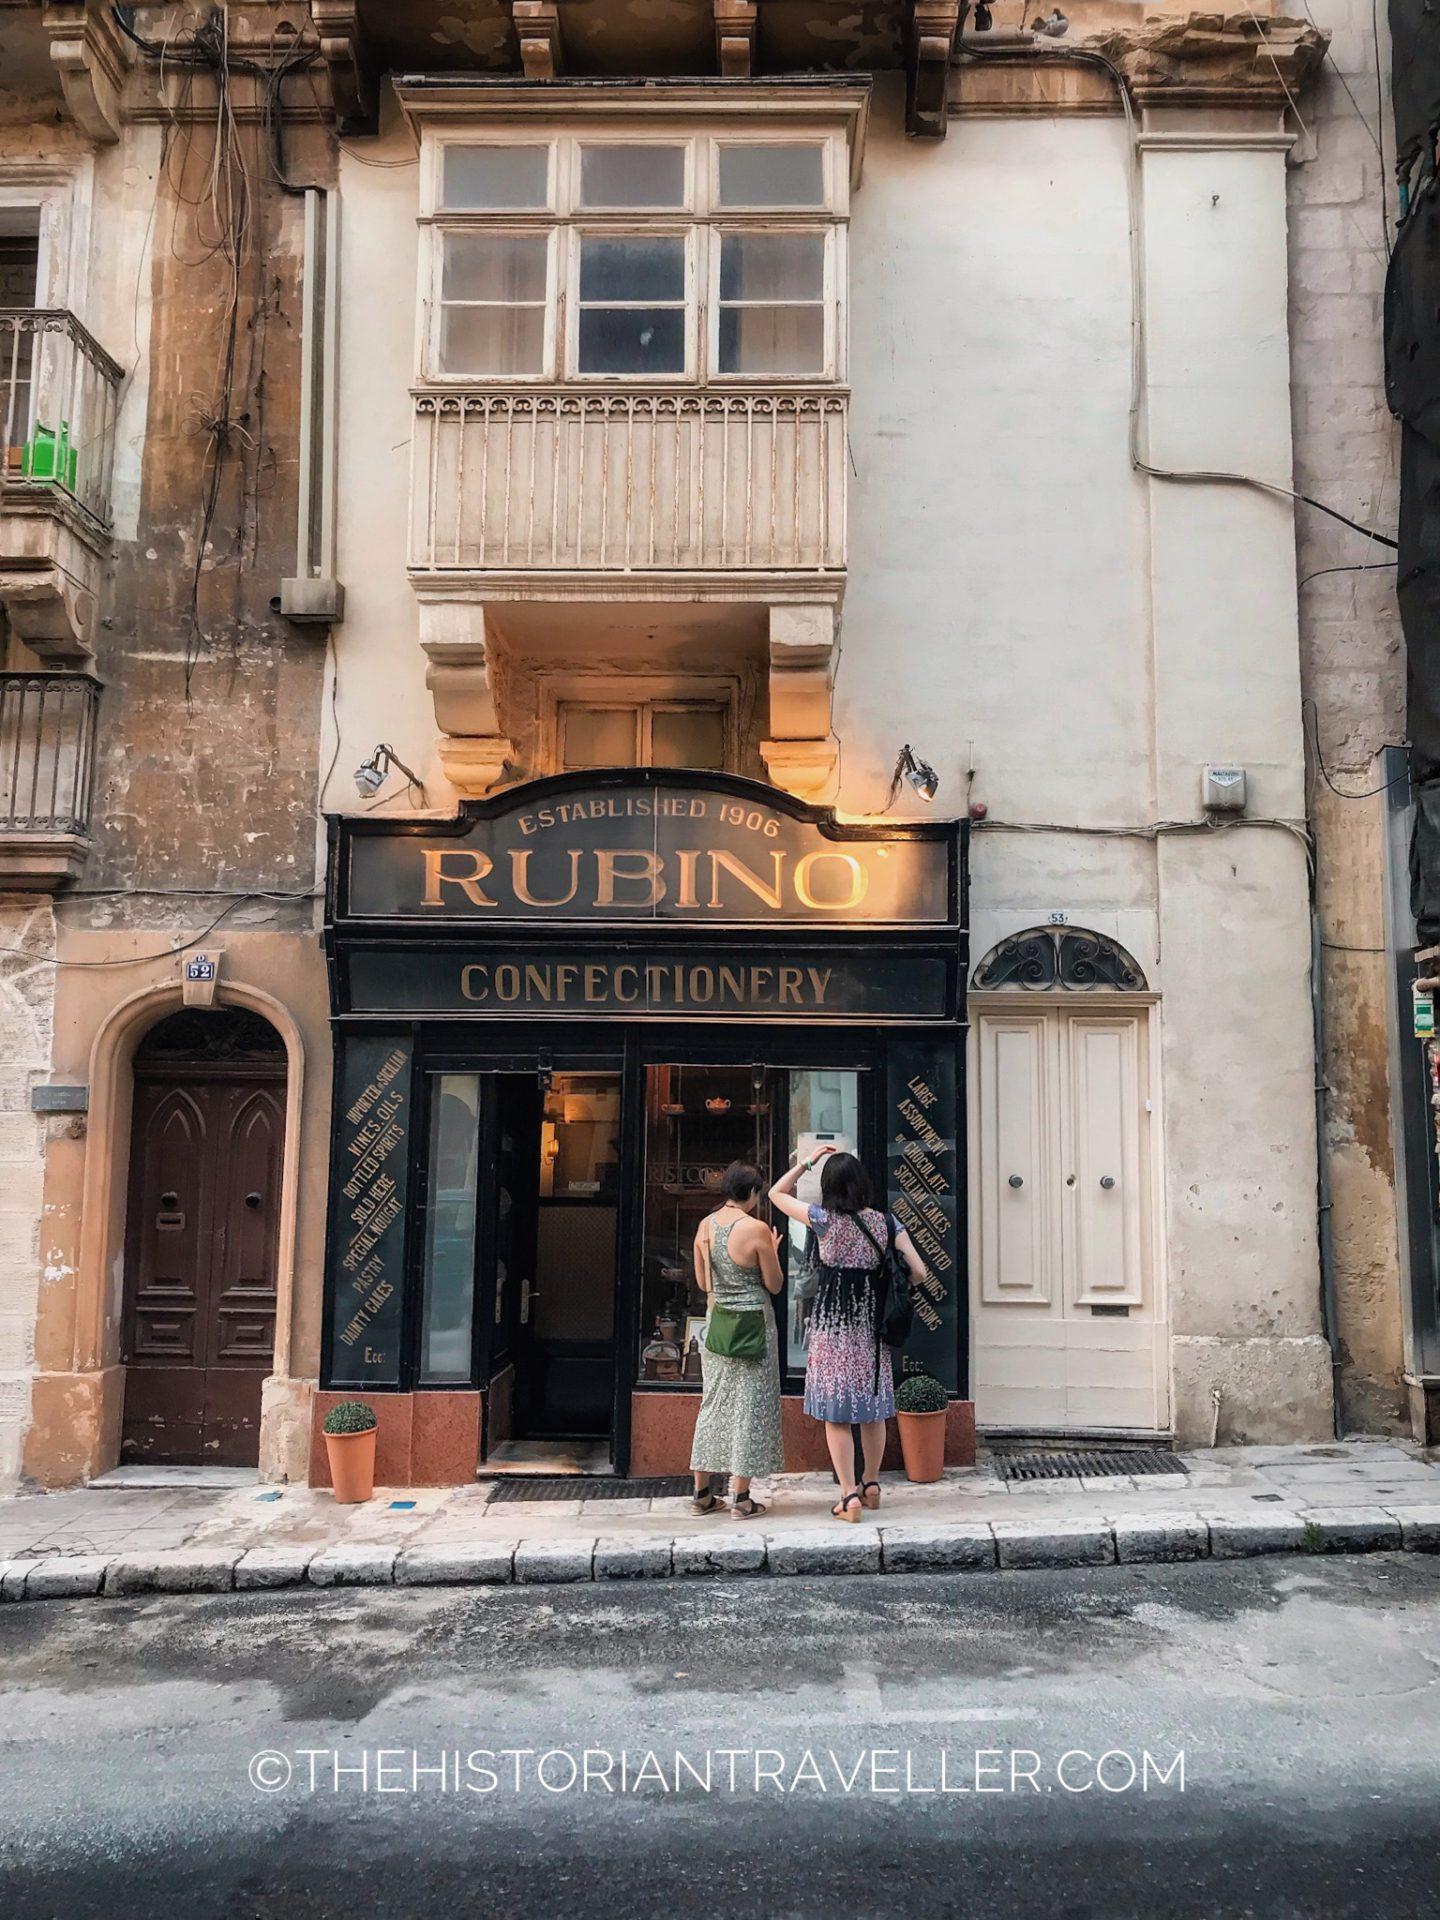 Rubino Confectionery in Valletta -Malta 6 days itinerary